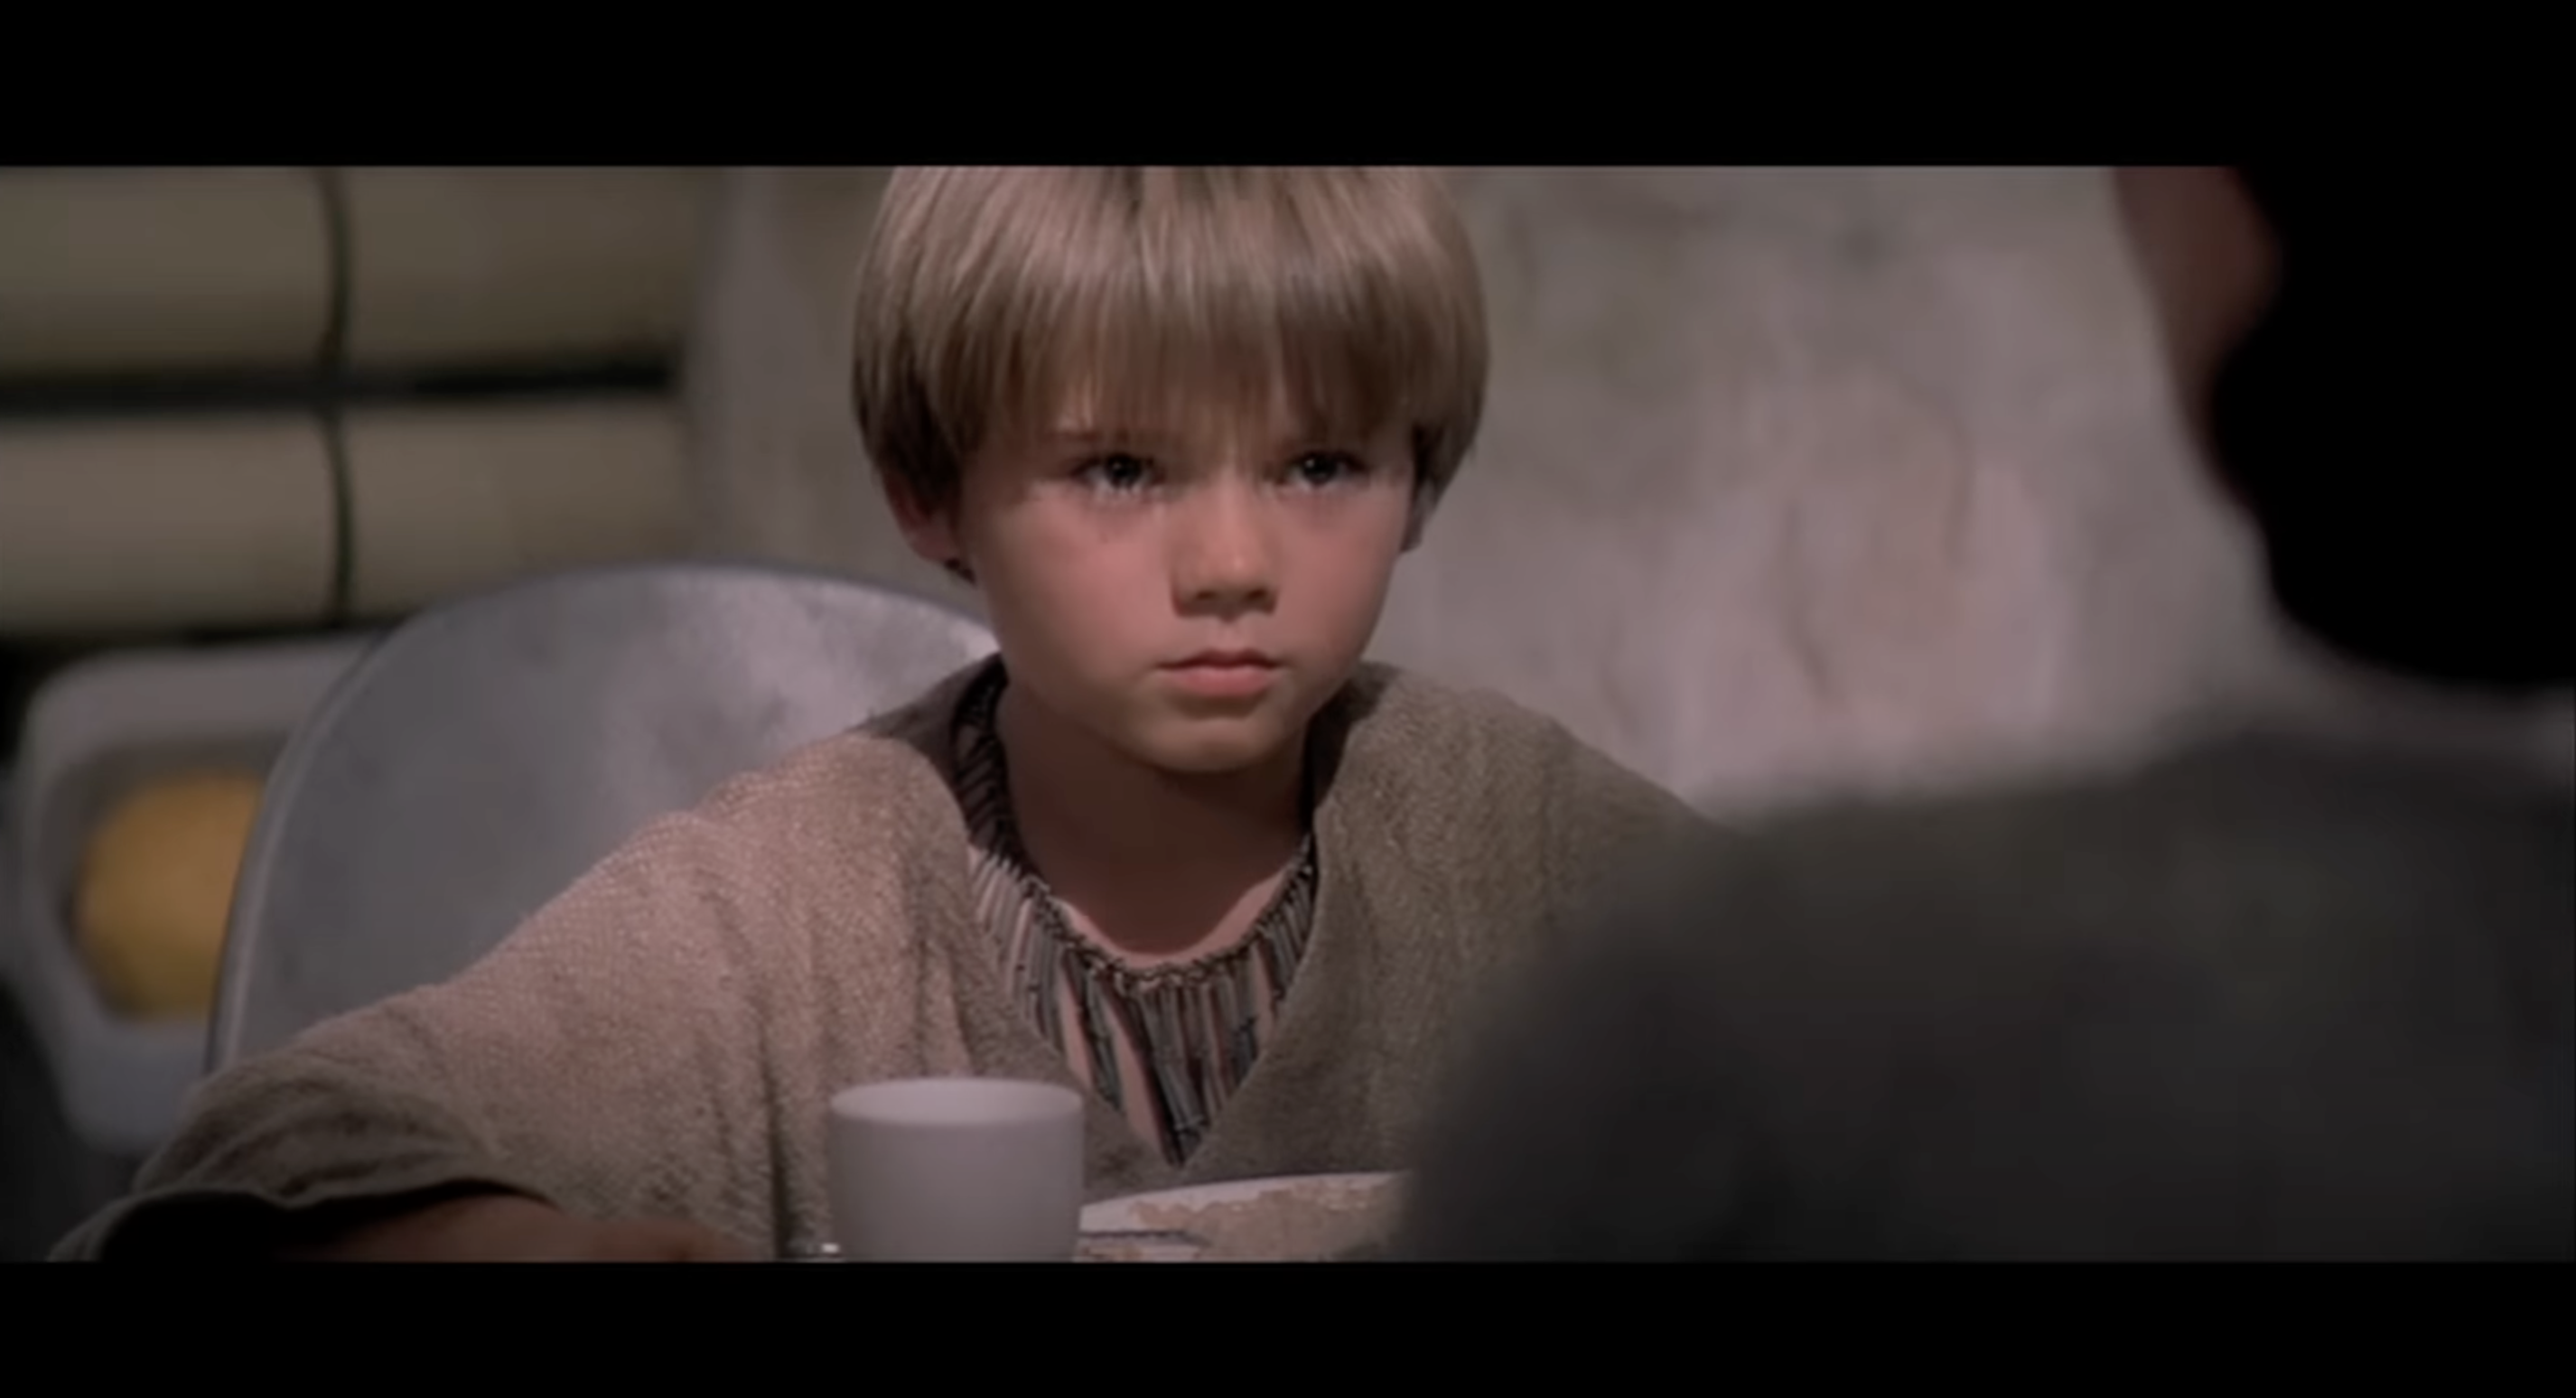 Jake Lloyd als junger Anakin Skywalker in "Star Wars Episode I: Die dunkle Bedrohung", zu sehen in einem Video vom 6. Juli 2012 | Quelle: YouTube/StarWars